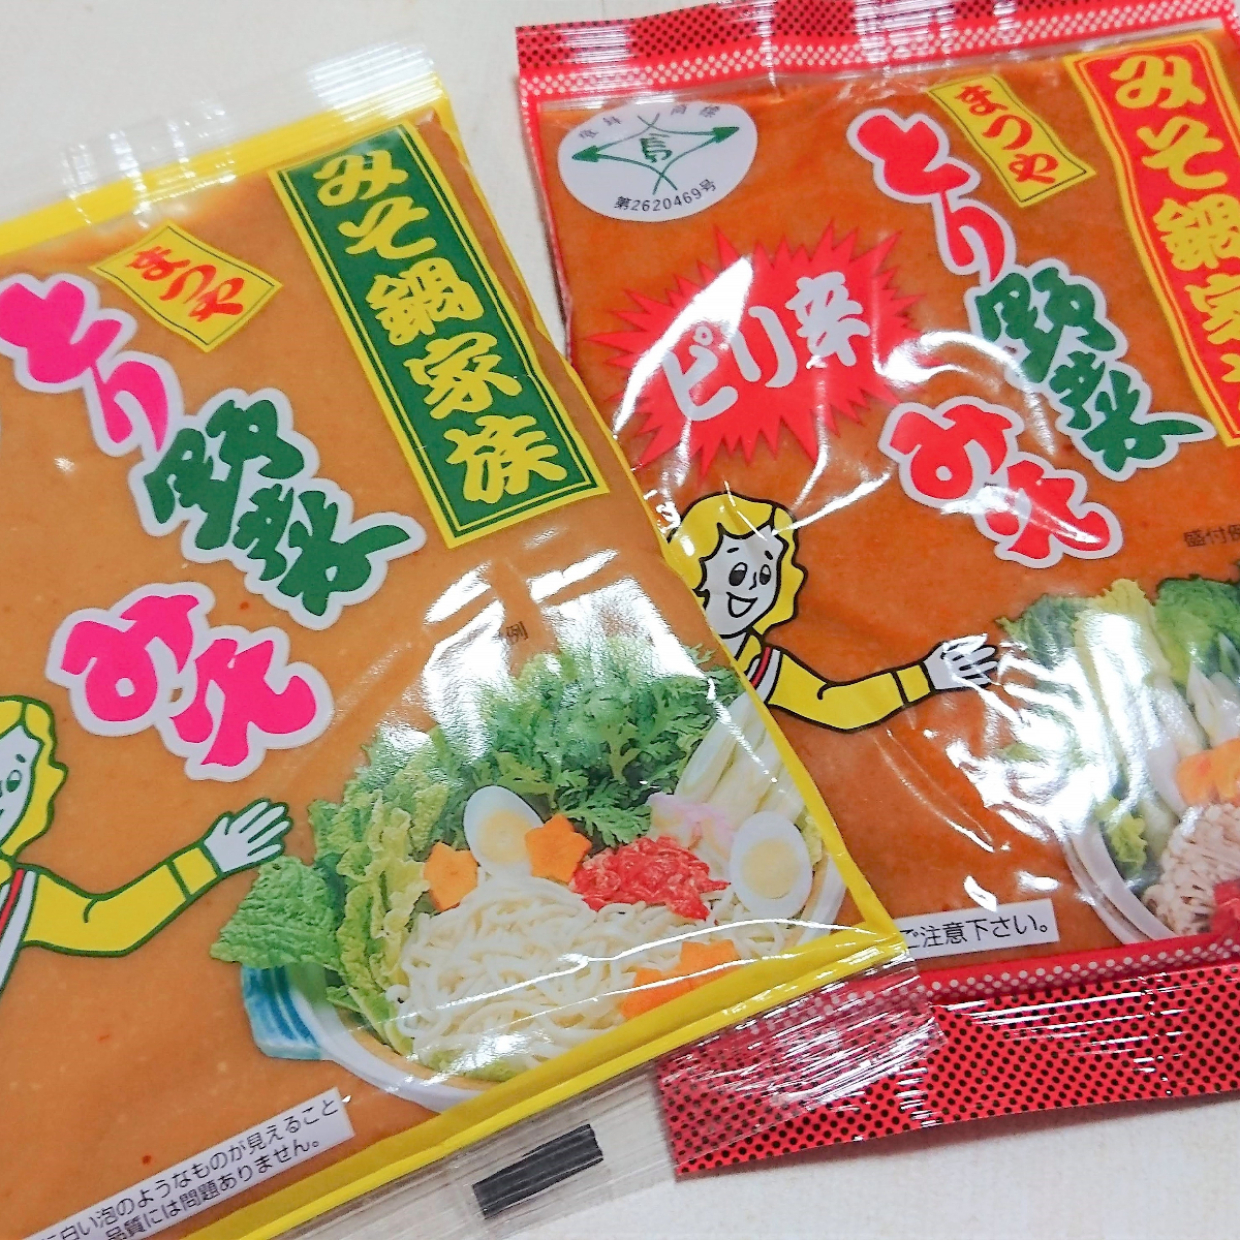  石川県民のソウルフード「とり野菜みそ」って知ってる？ 